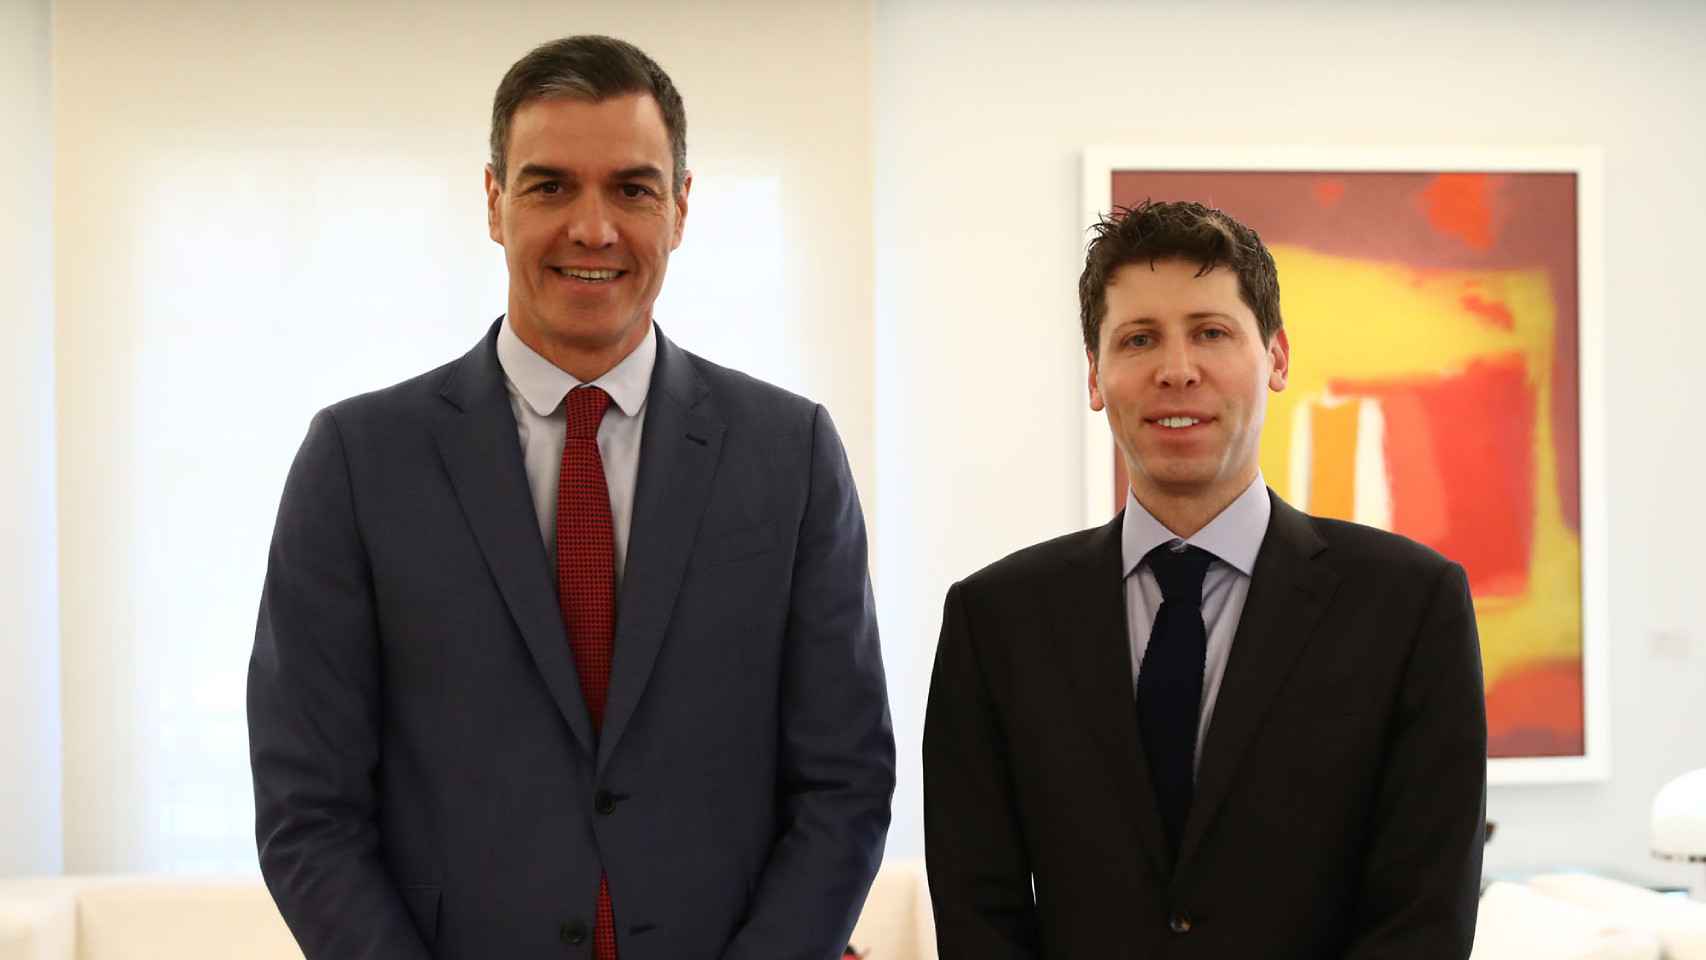 El presidente del Gobierno Pedro Sánchez (izqda.) con Sam Altman, CEO de OpenAI (dcha.).